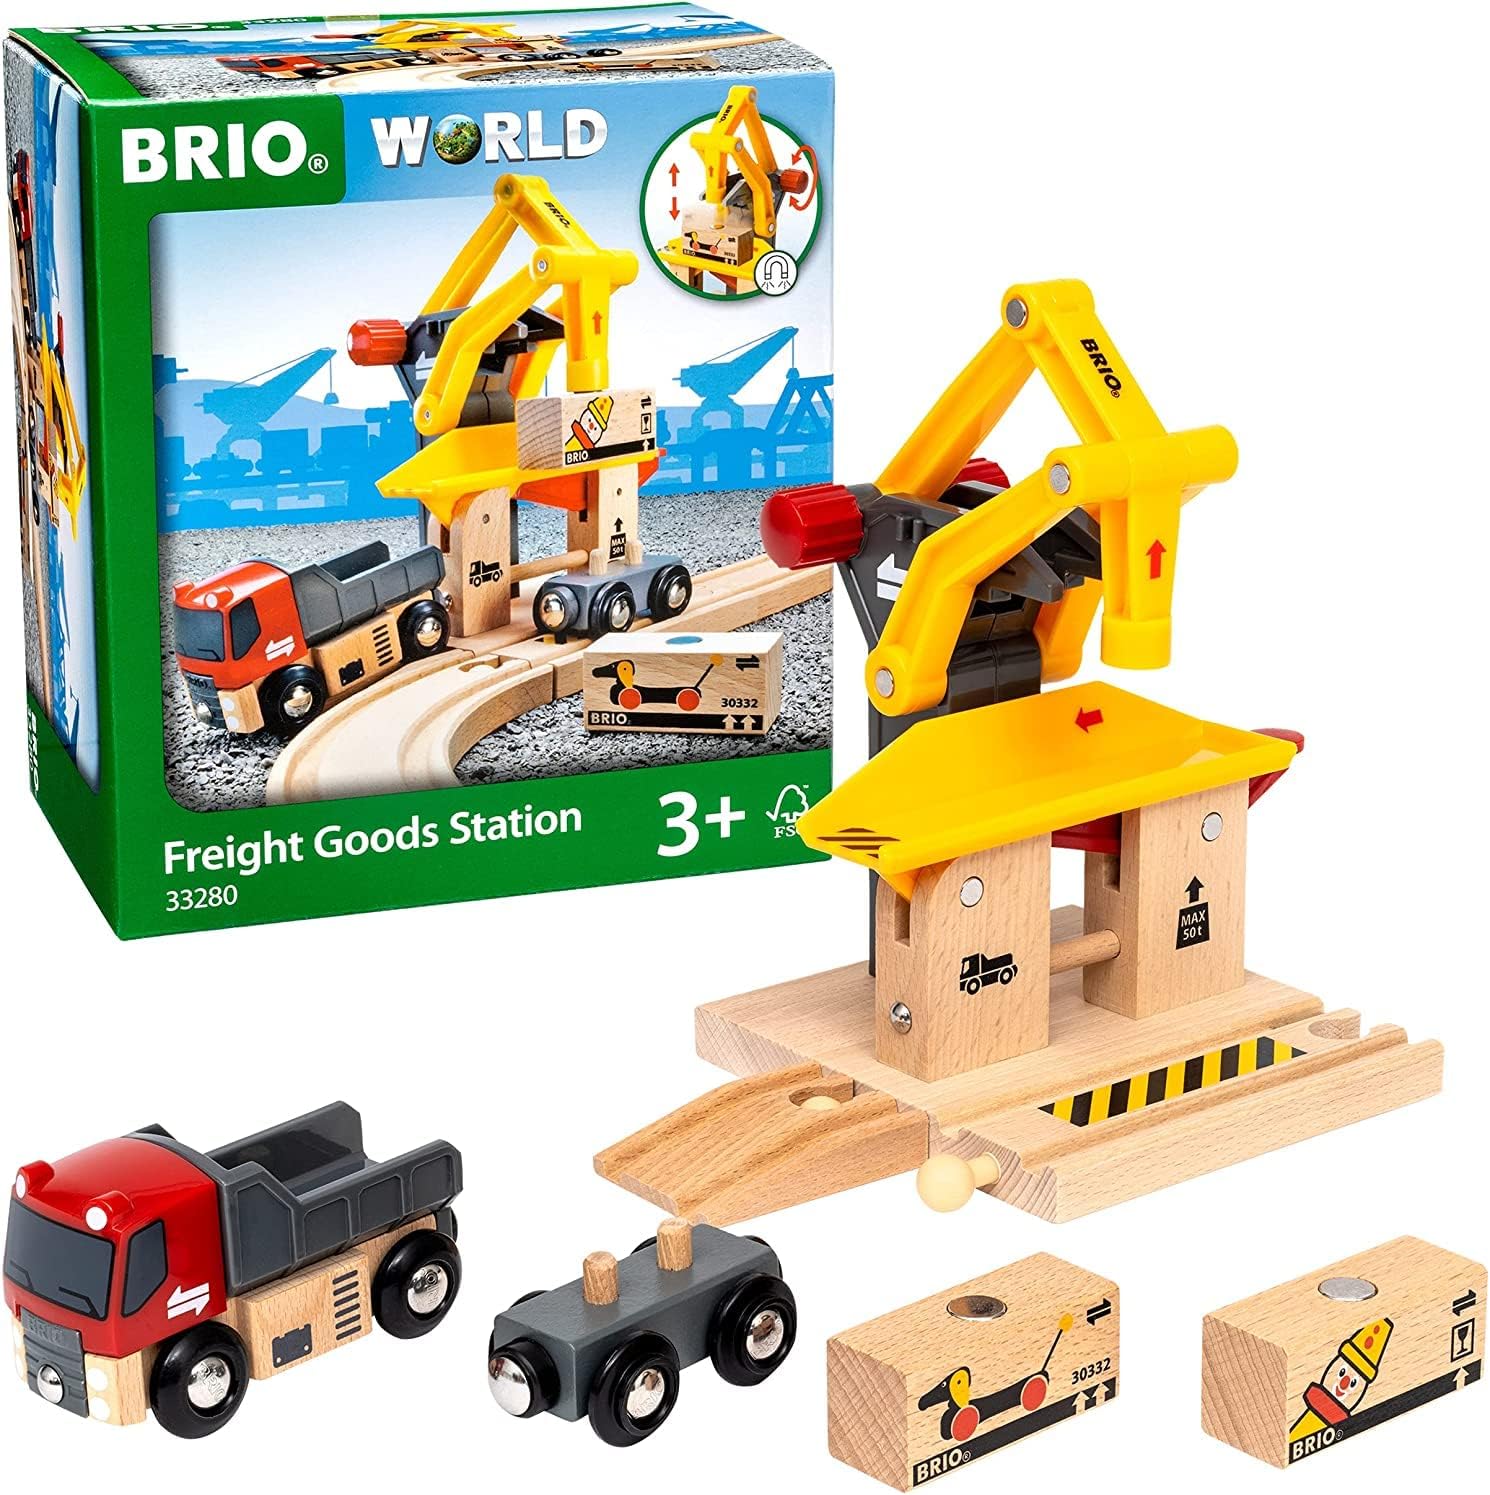 Brio World Freight Goods Station BRIO